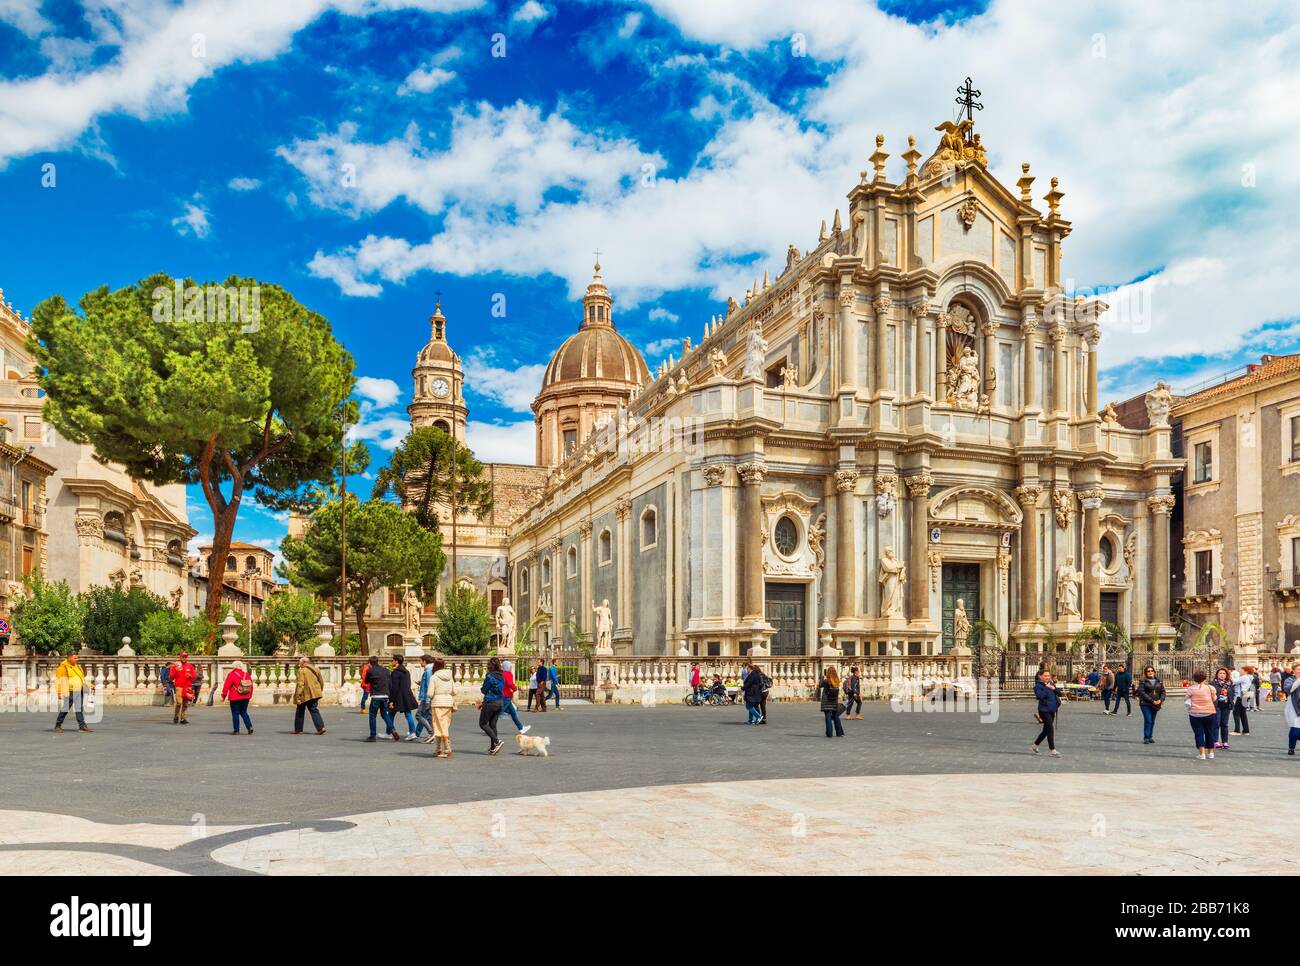 Catane - avril 2019, Italie : vue sur la cathédrale de Sant'Agata dans le centre historique de la ville Banque D'Images